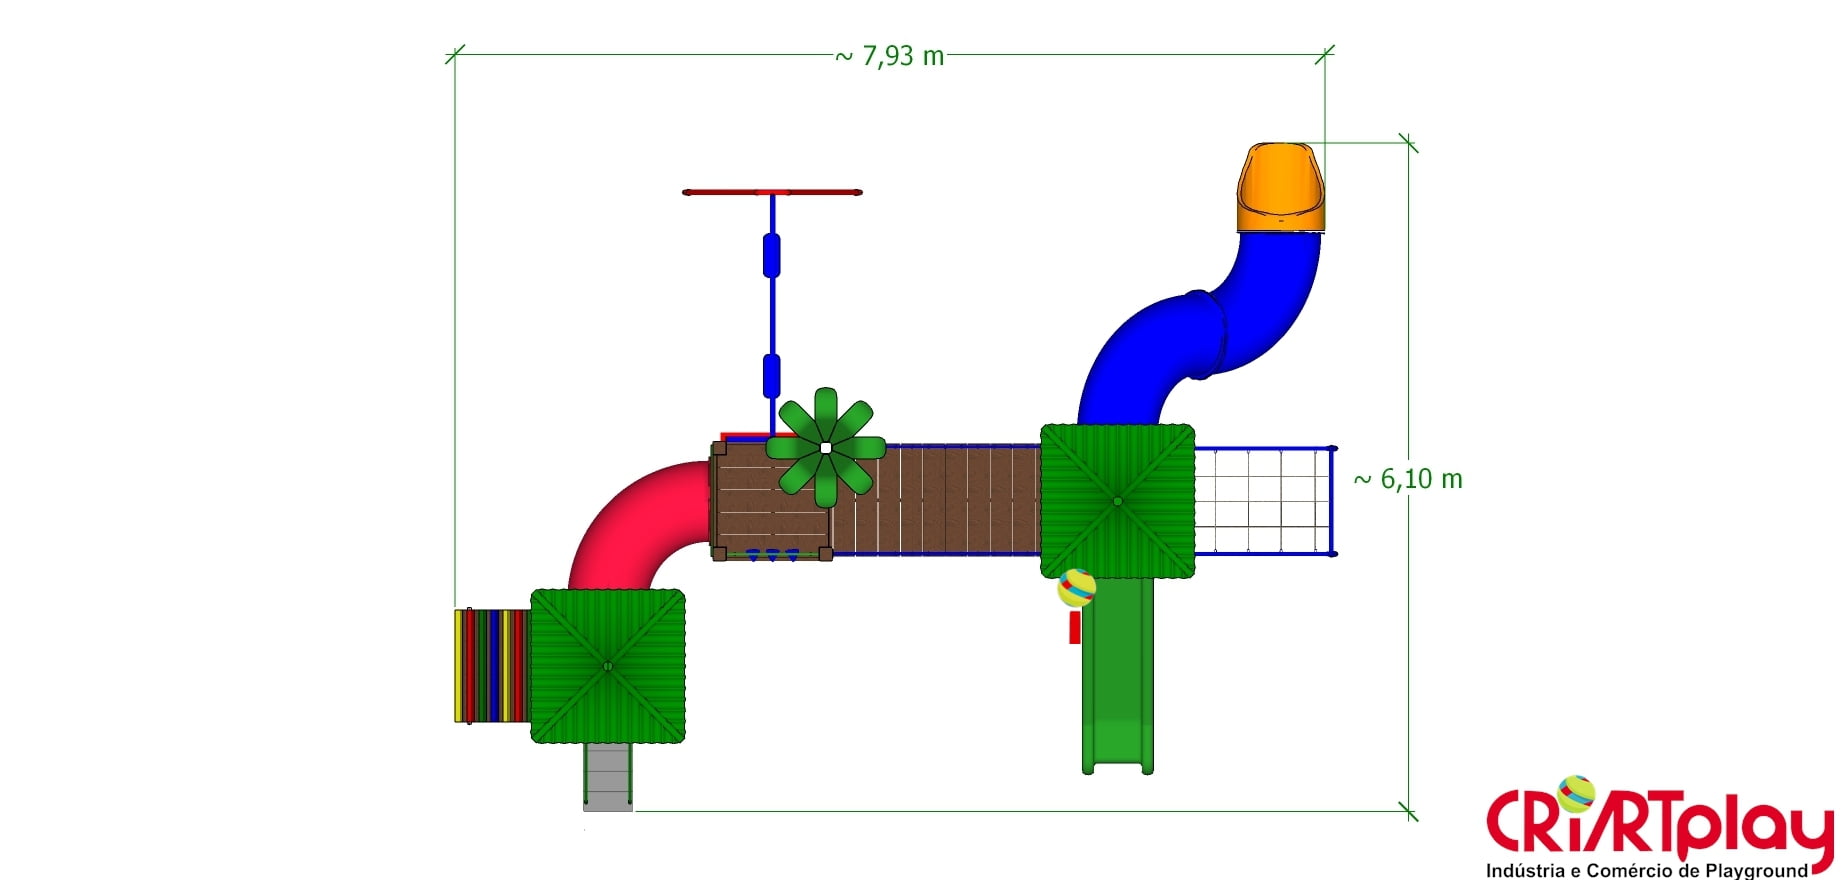 Playground Modular de Madeira Plástica - CMP - 2030